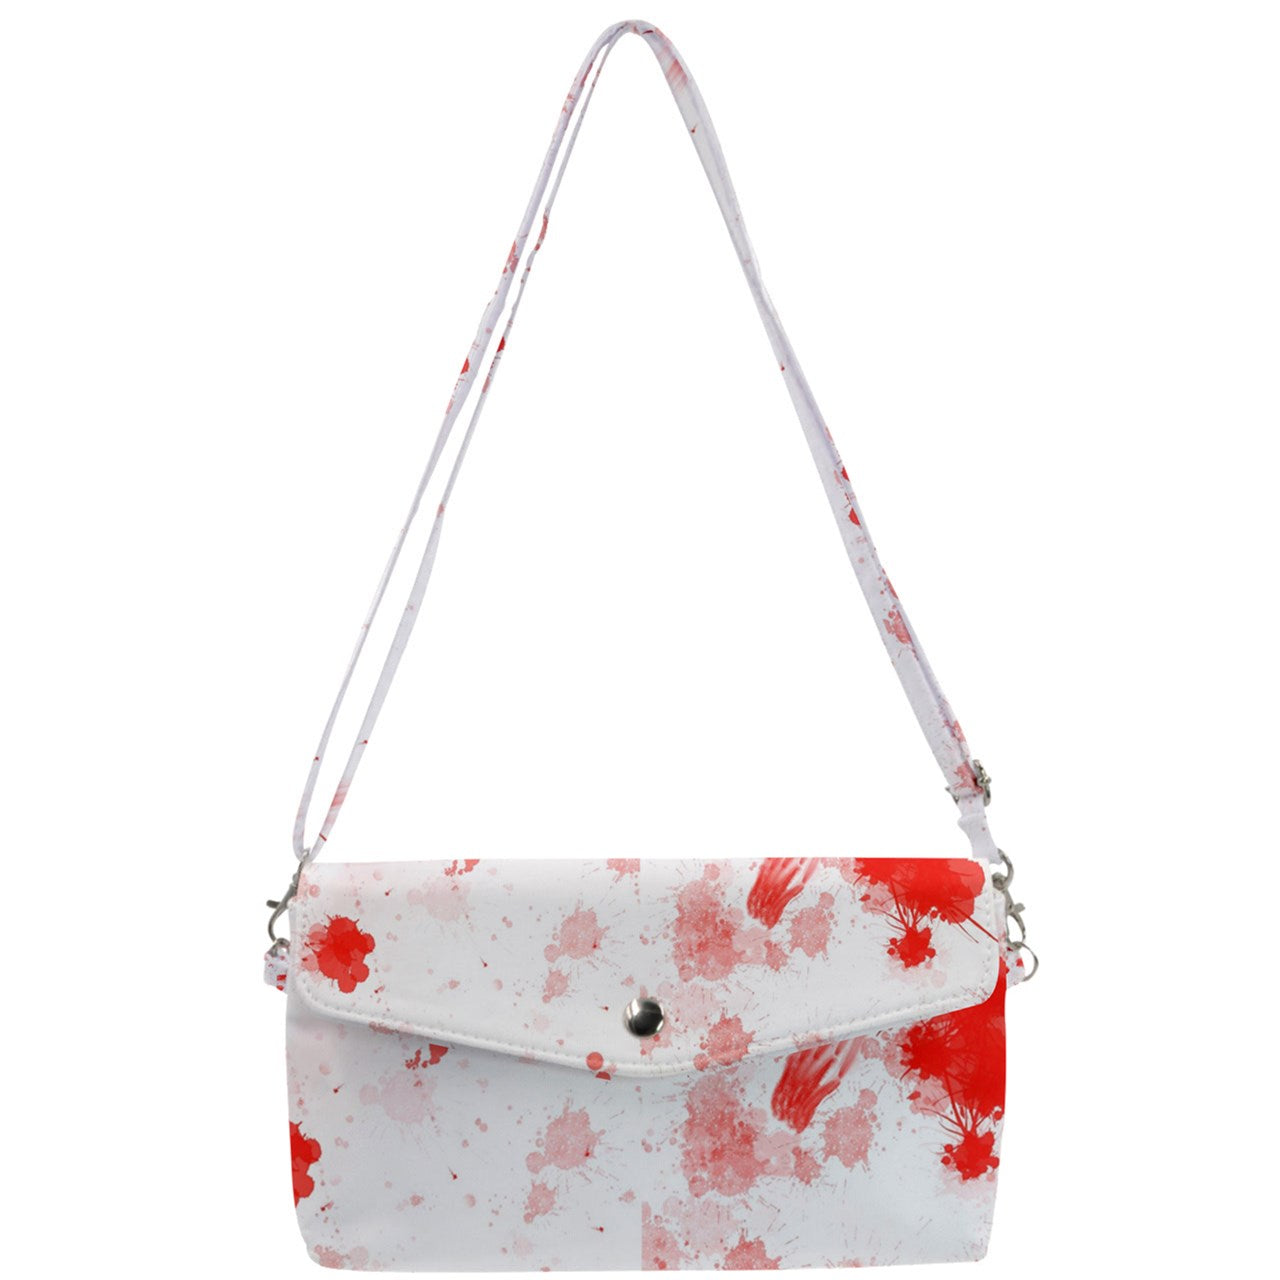 blood spatter Removable Strap Clutch Bag